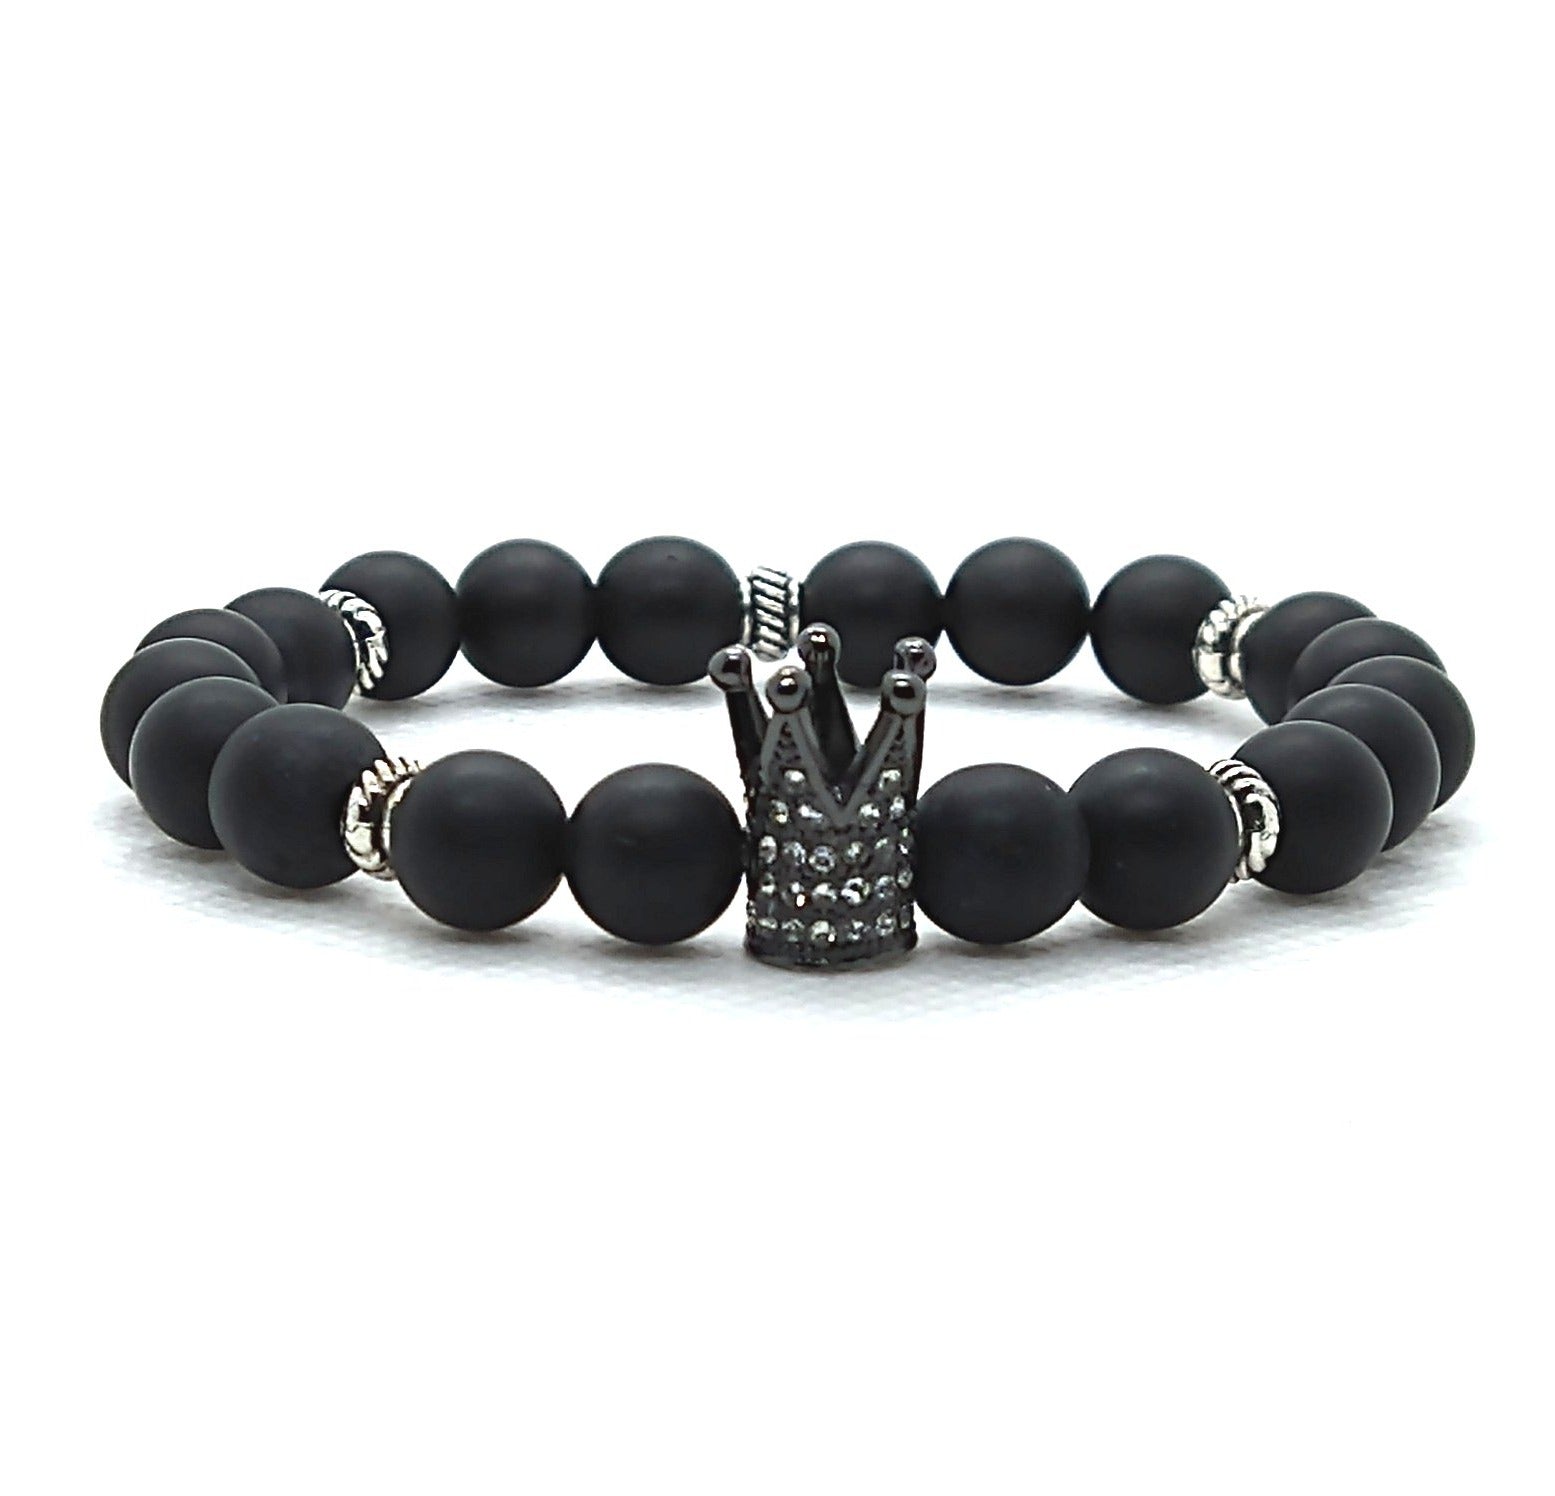 Crown Me Black Sire - Black Crown Bracelet - Unlimited Royalty Apparel